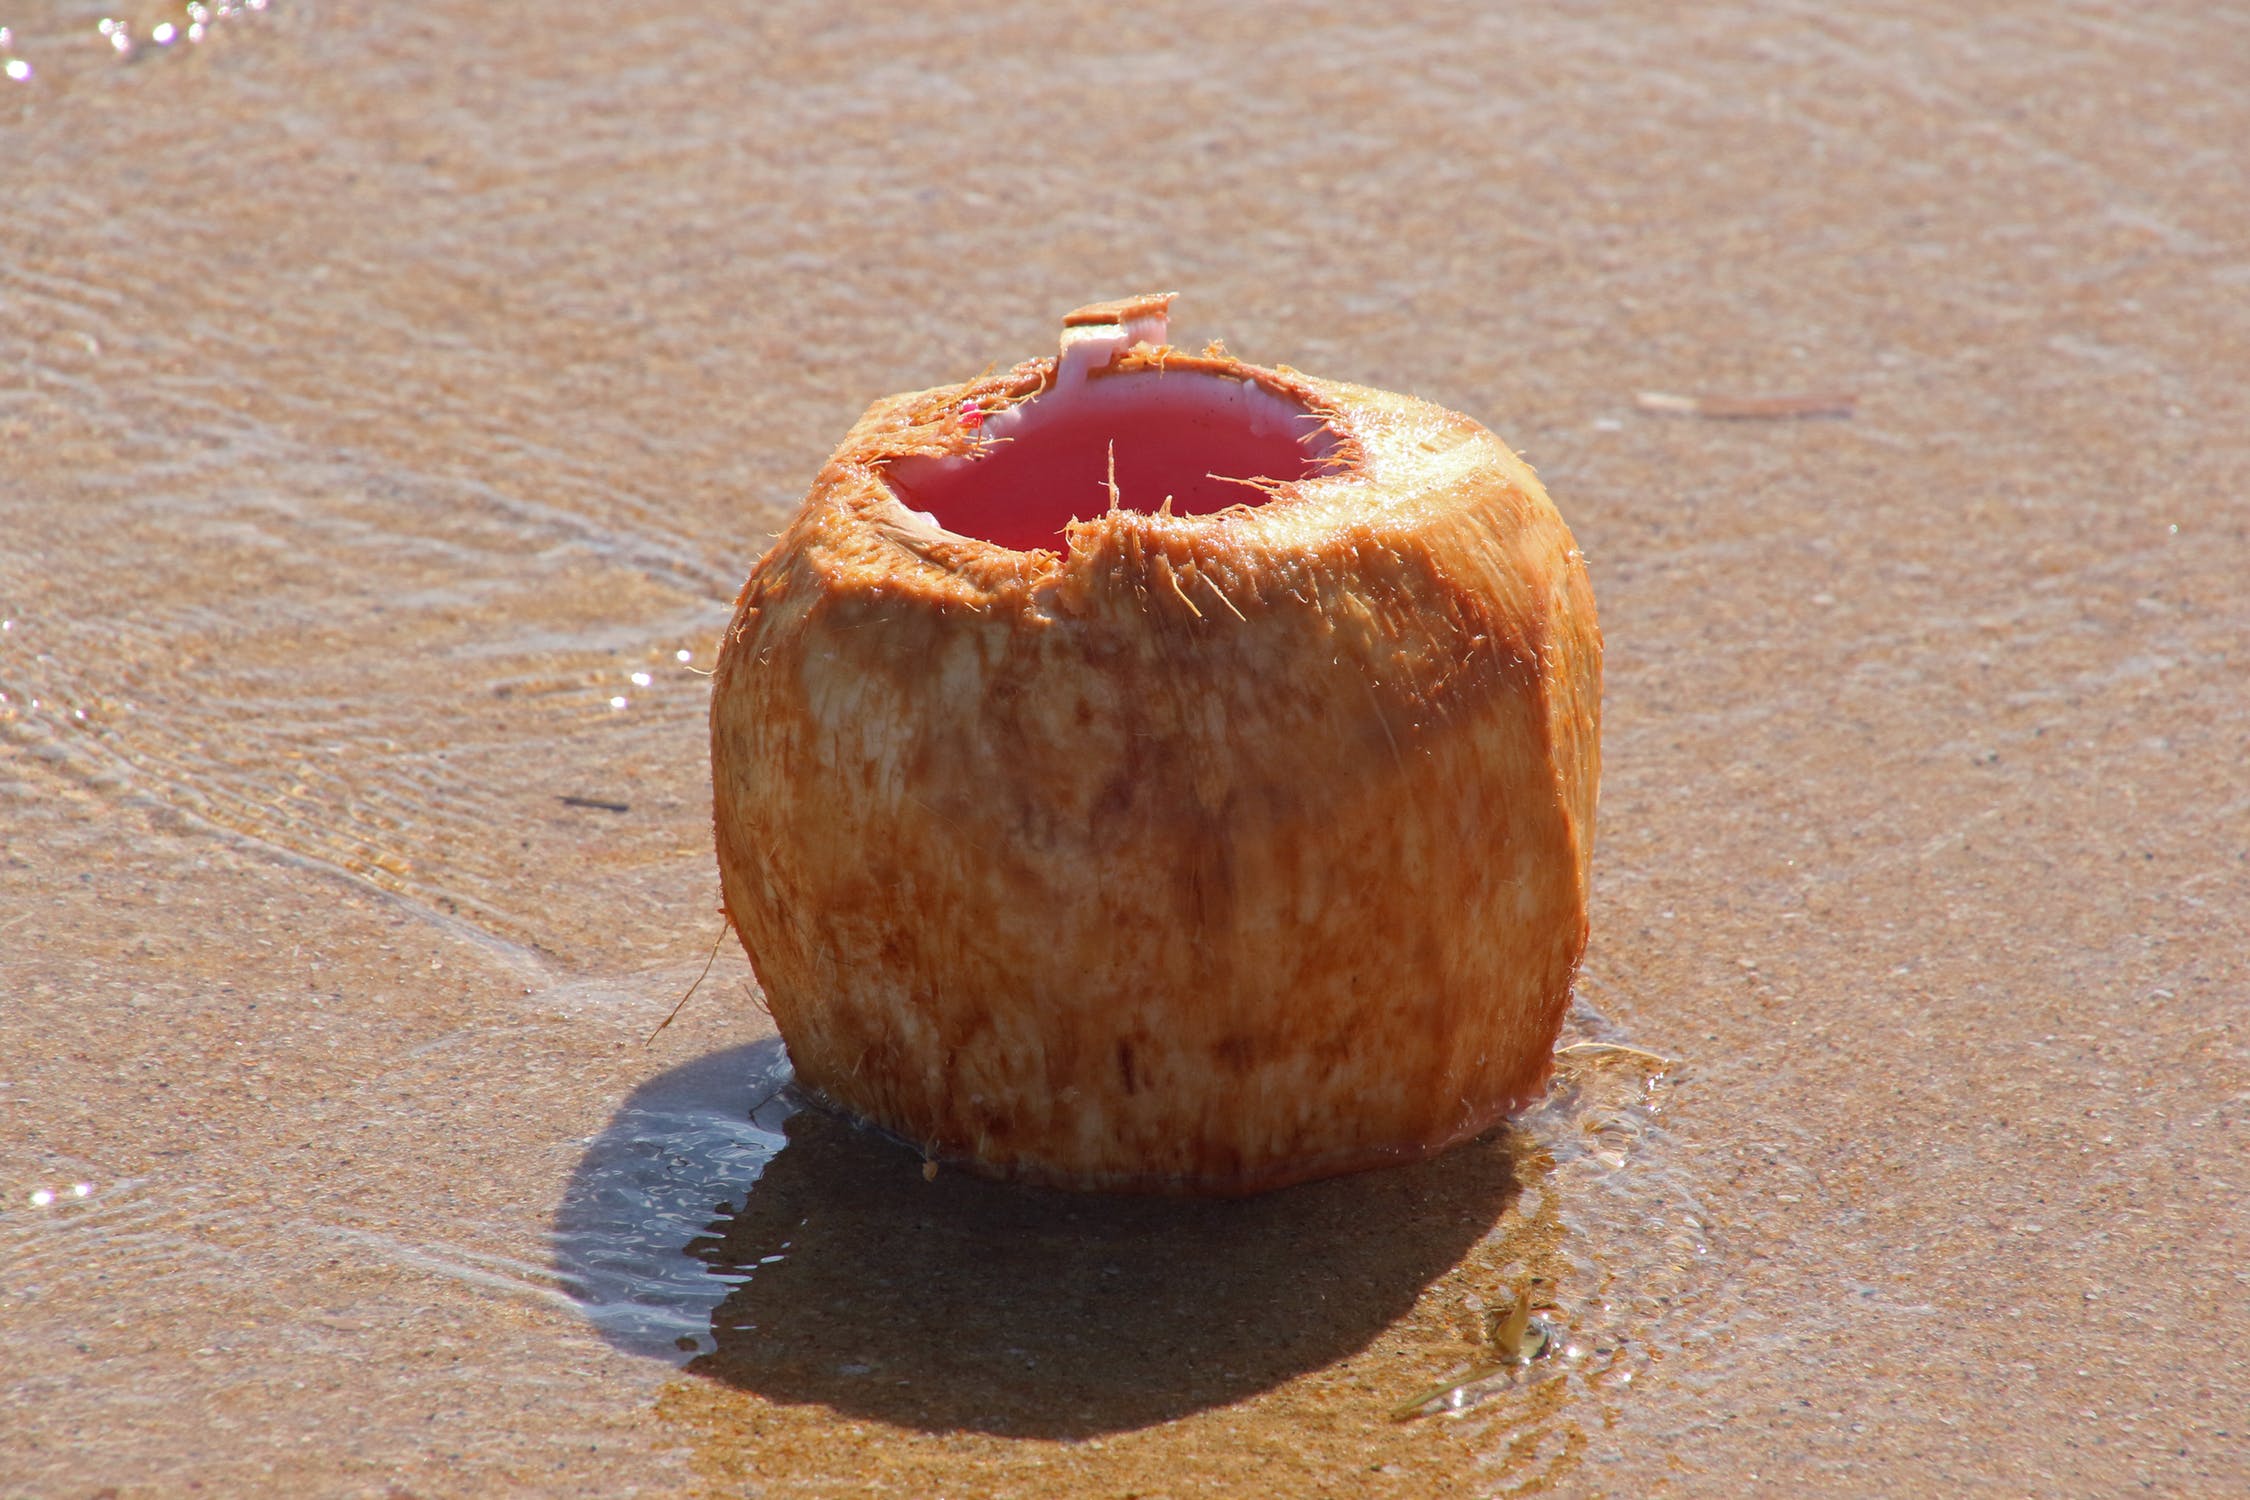 Lone coconut on the sand, Lone coconut on the sand